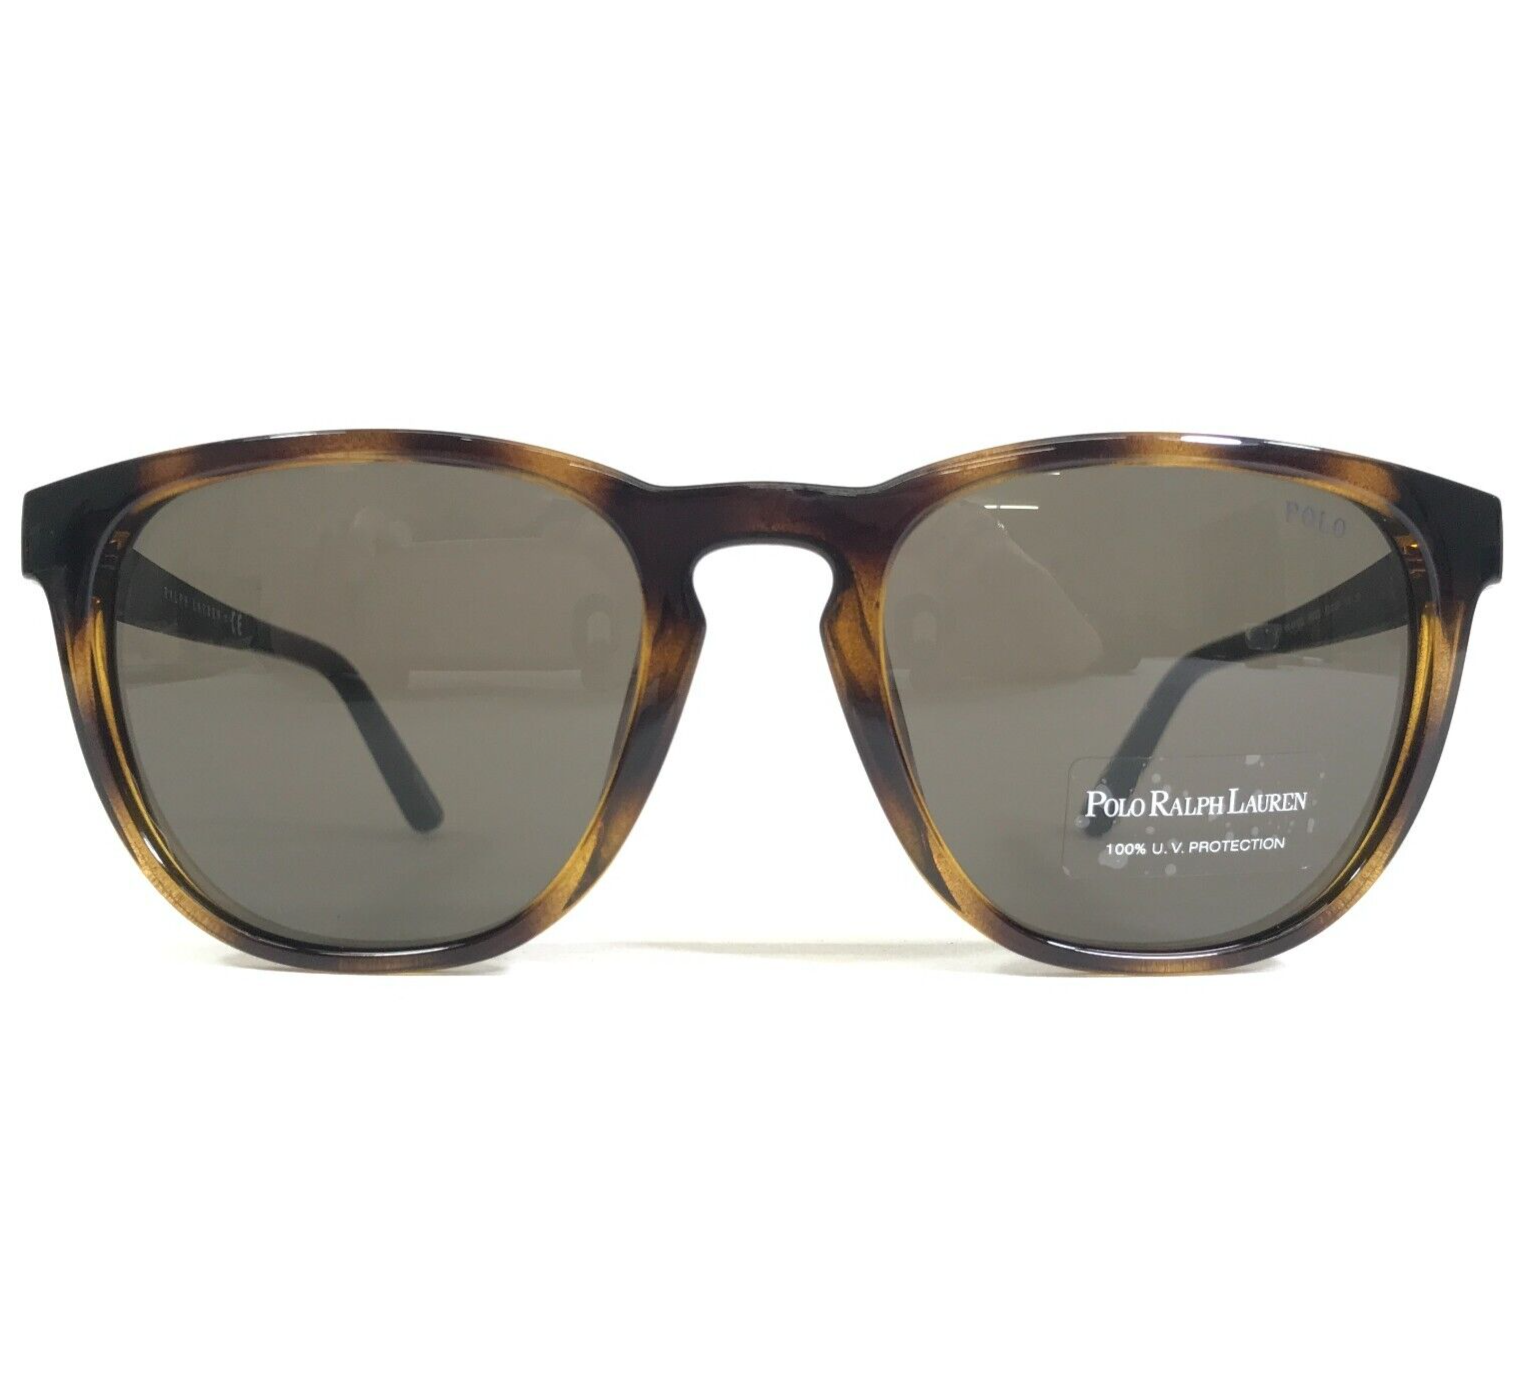 Primary image for Polo Ralph Lauren Sunglasses PH 4182U 5003/3 Brown Tortoise Gunmetal Gray Lenses